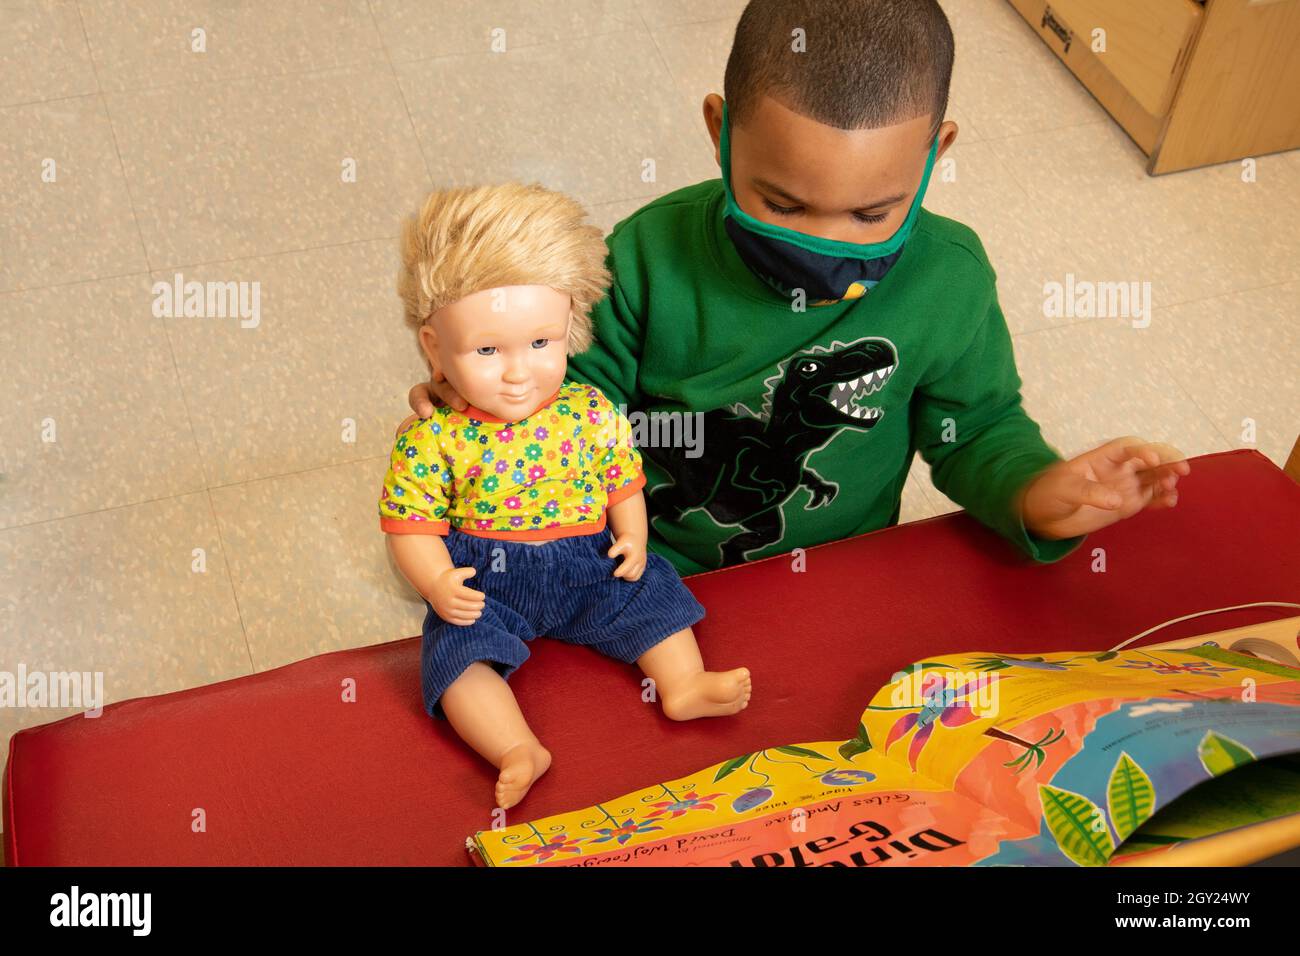 Éducation préscolaire 3-4 ans garçon Playingin zone familiale, lecture livre à poupée, livre placé pour que la poupée puisse le voir Banque D'Images